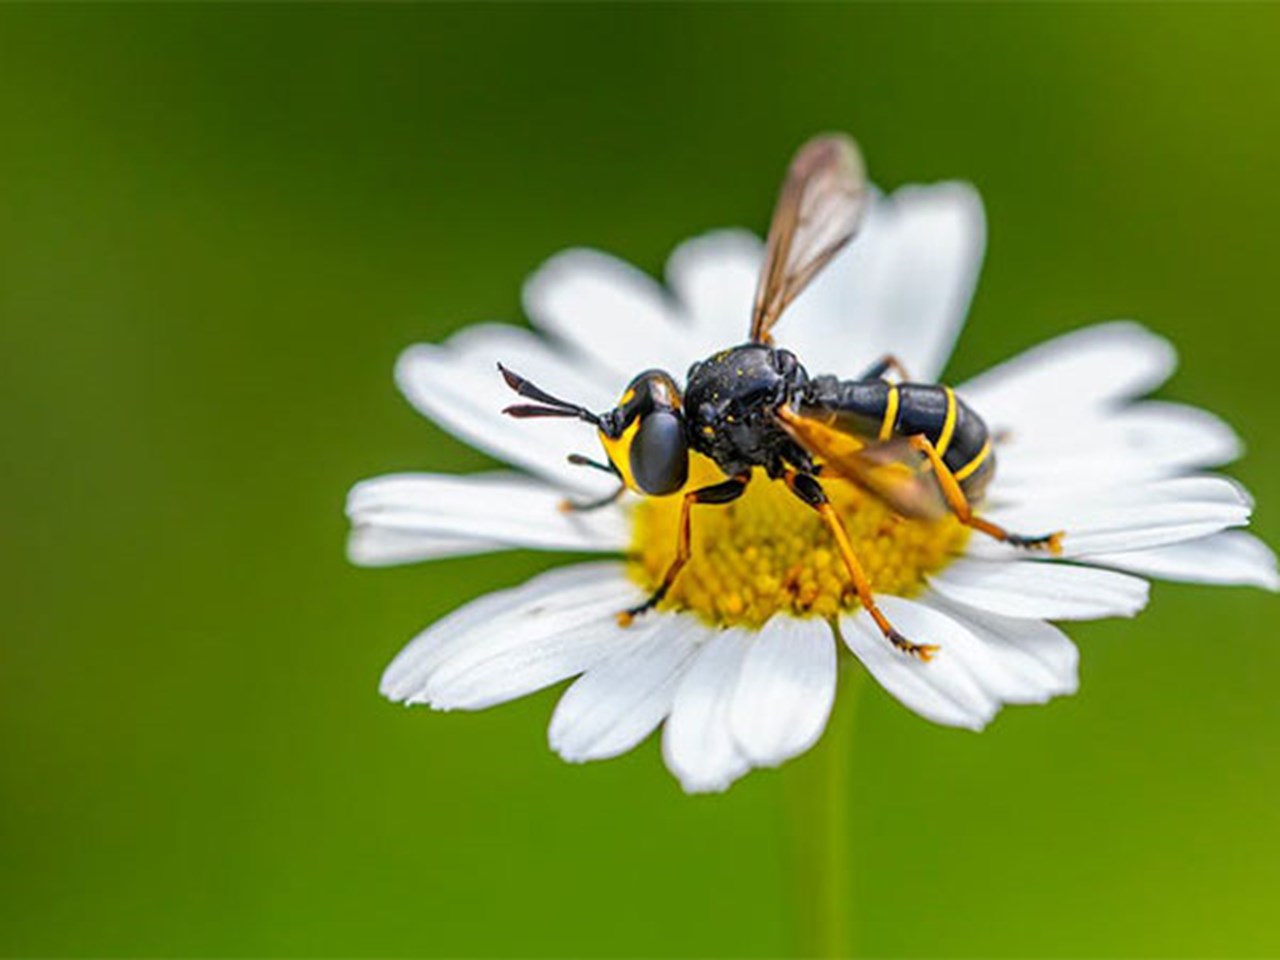 L’apicoltura urbana rapida ha un effetto negativo sulle popolazioni di api selvatiche: uno studio